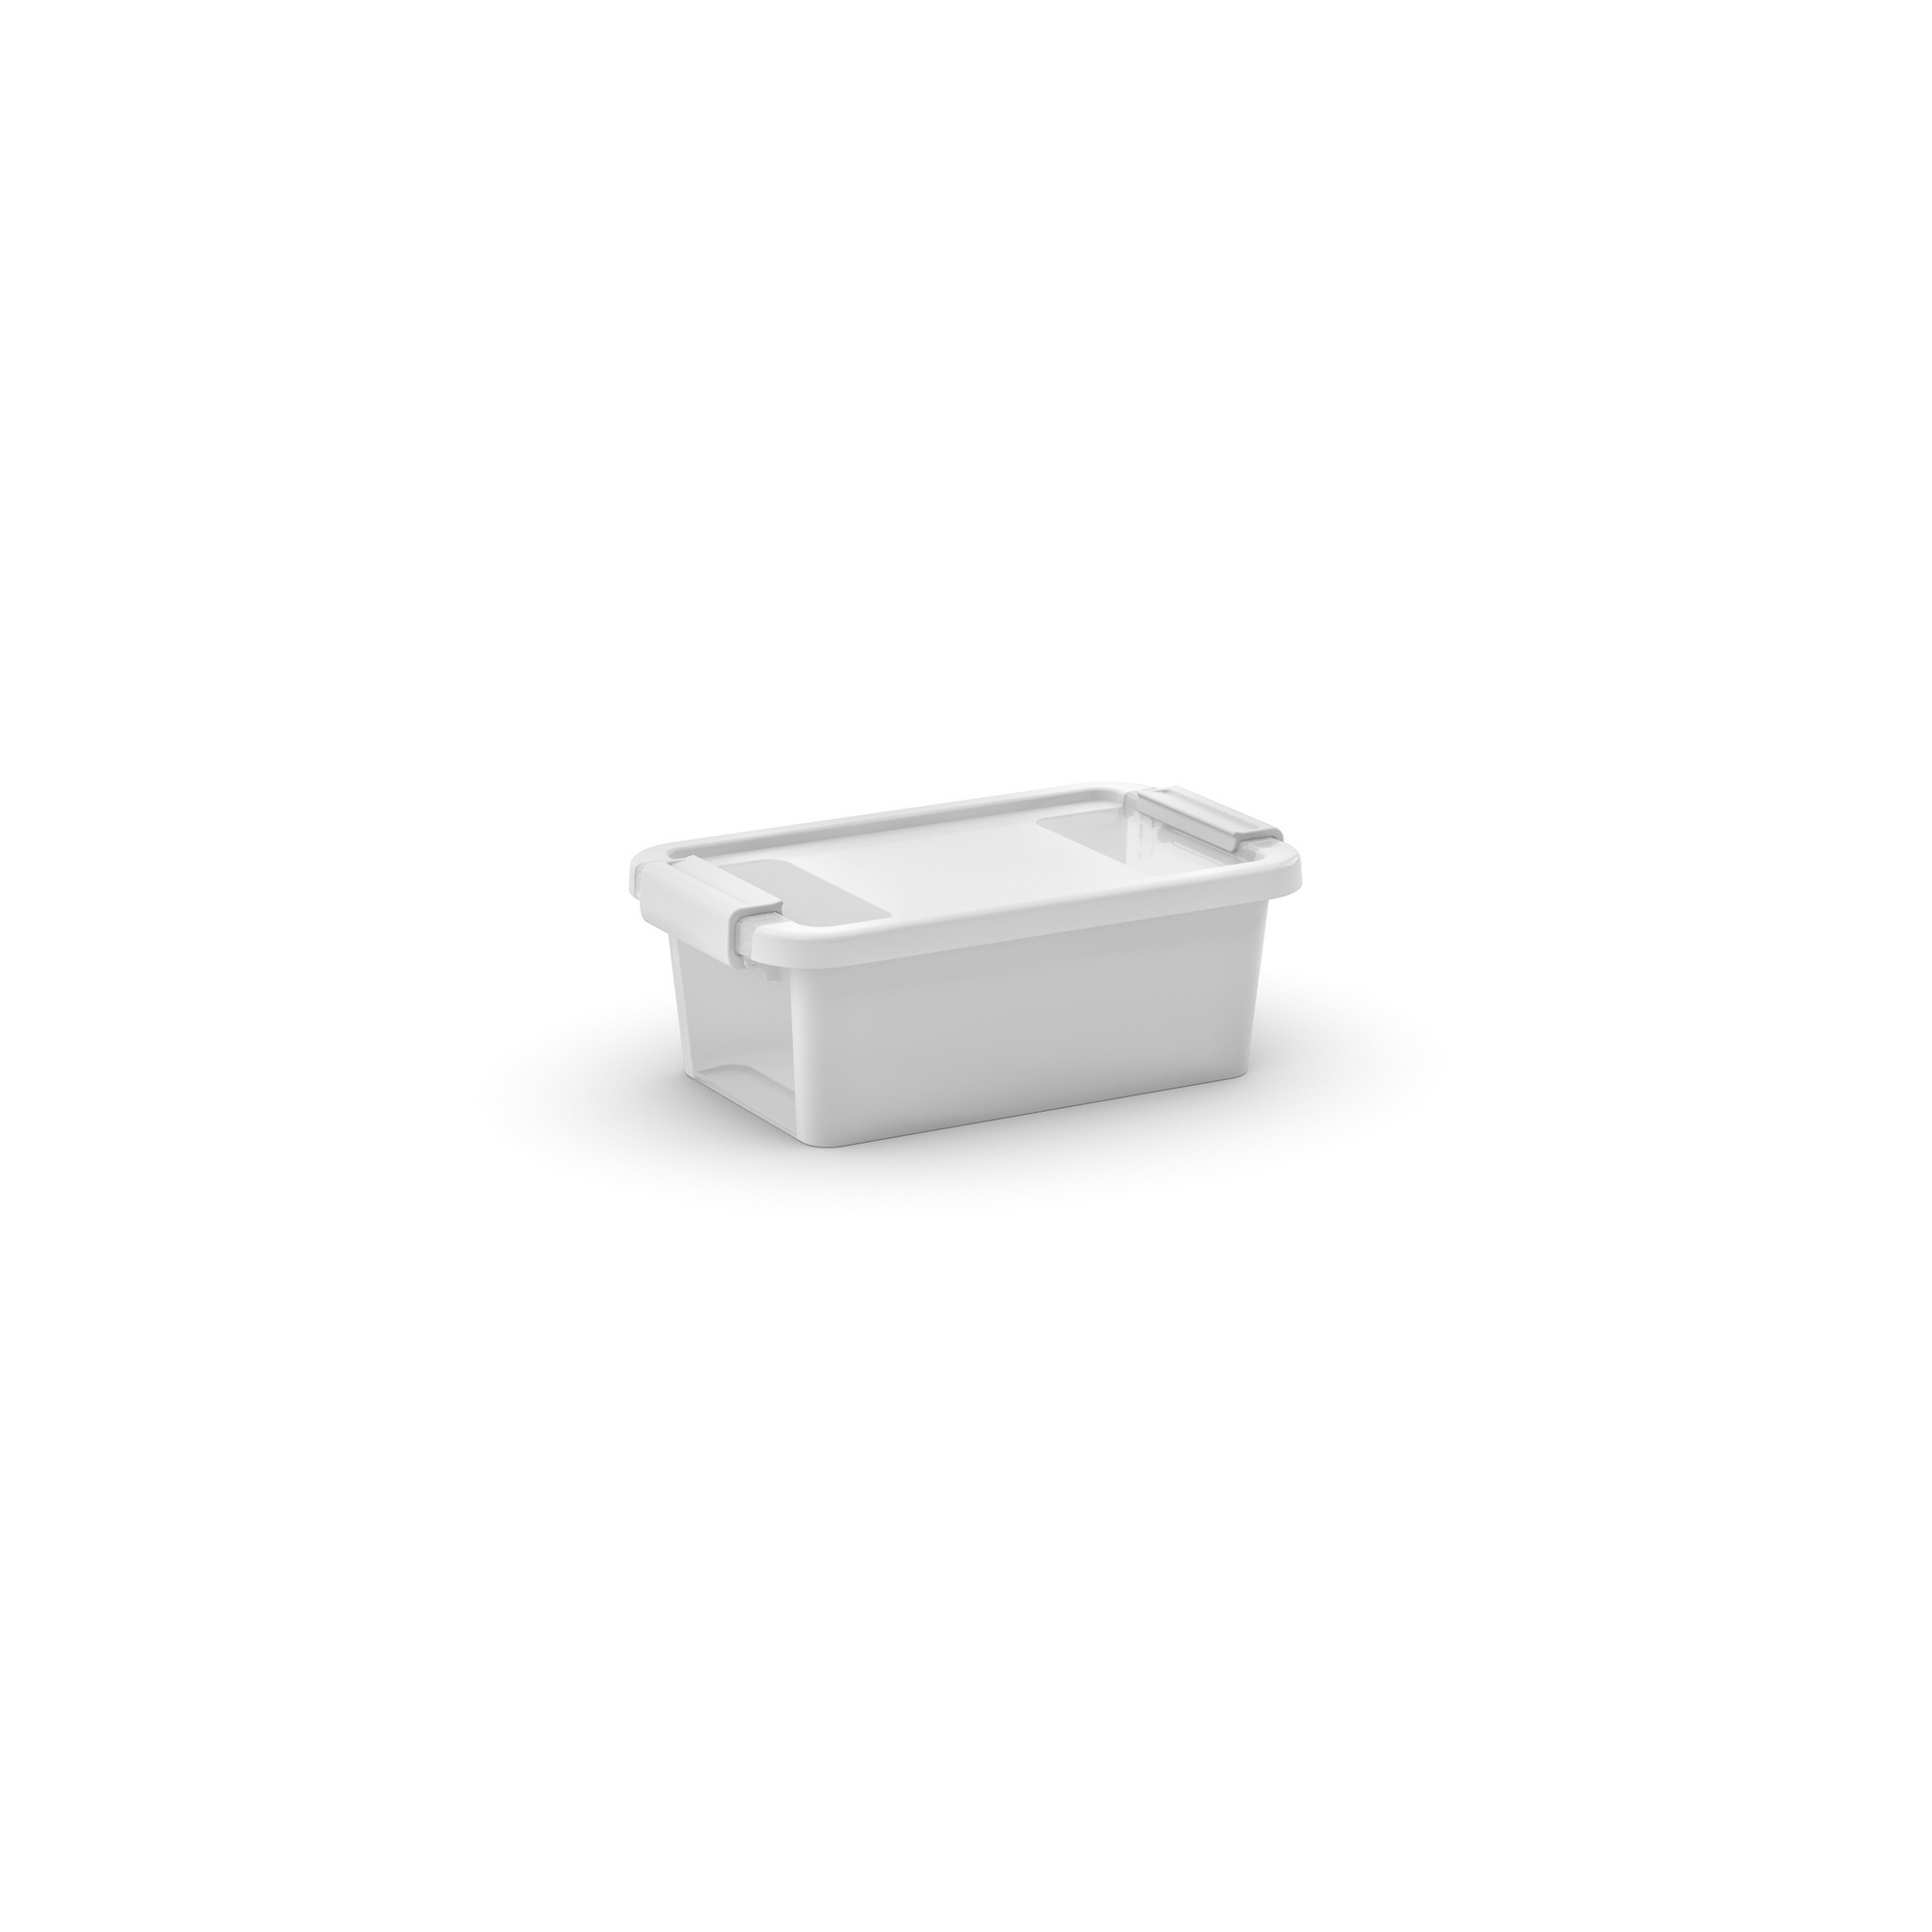 Aufbewahrungsbox 'BI Box XS' weiß / transparent 3 l  26,5 x 16 x 10 cm + product picture